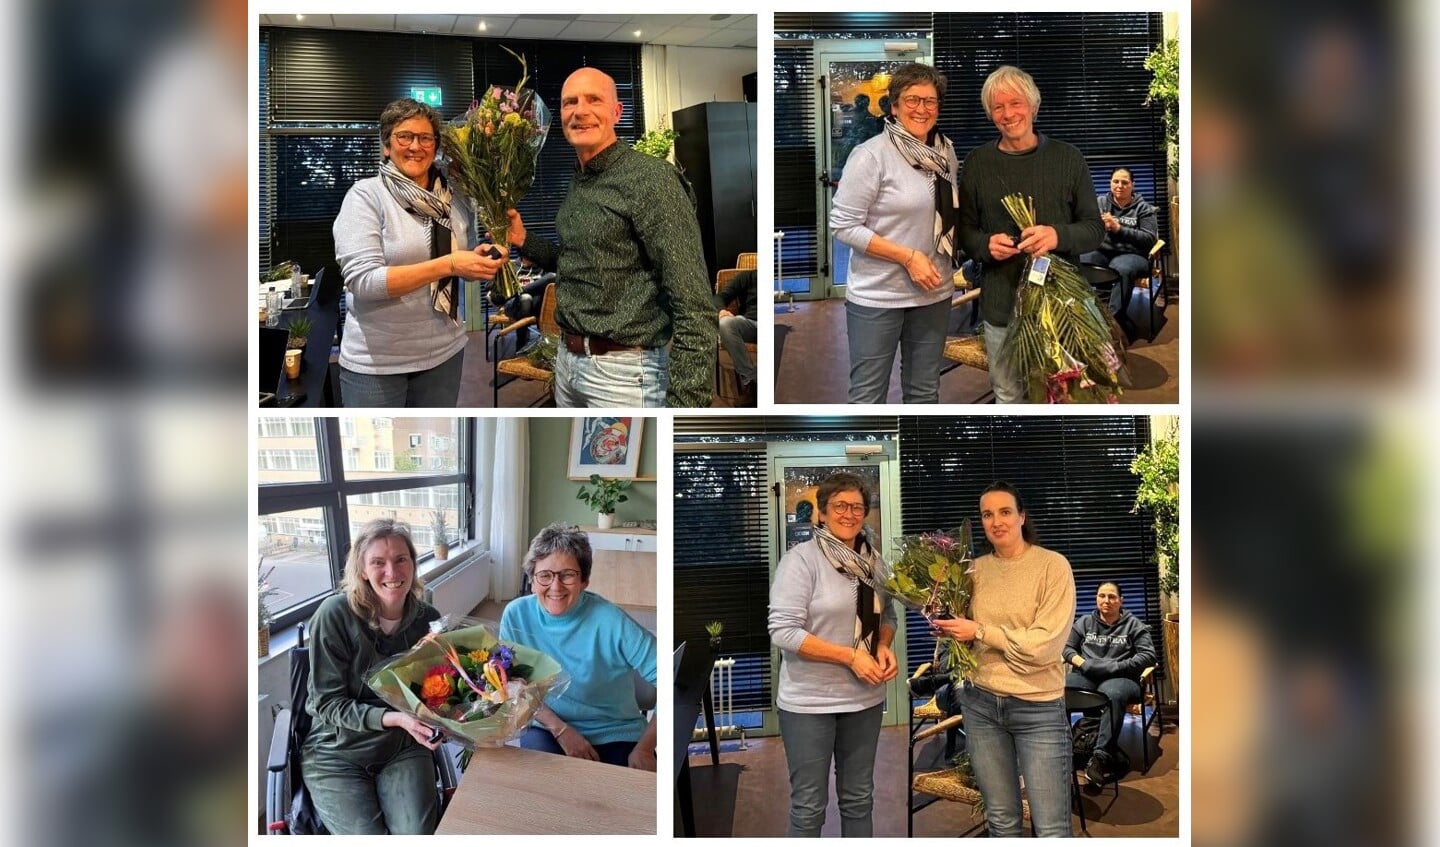 Uit handen van voorzitter Myra Houdijk ontvangen de jubilarissen bloemen en het ZVVS speldje: Sjaak Gieles, Emiel v.Elderen, Mariëlla Danse en Nadya Putter